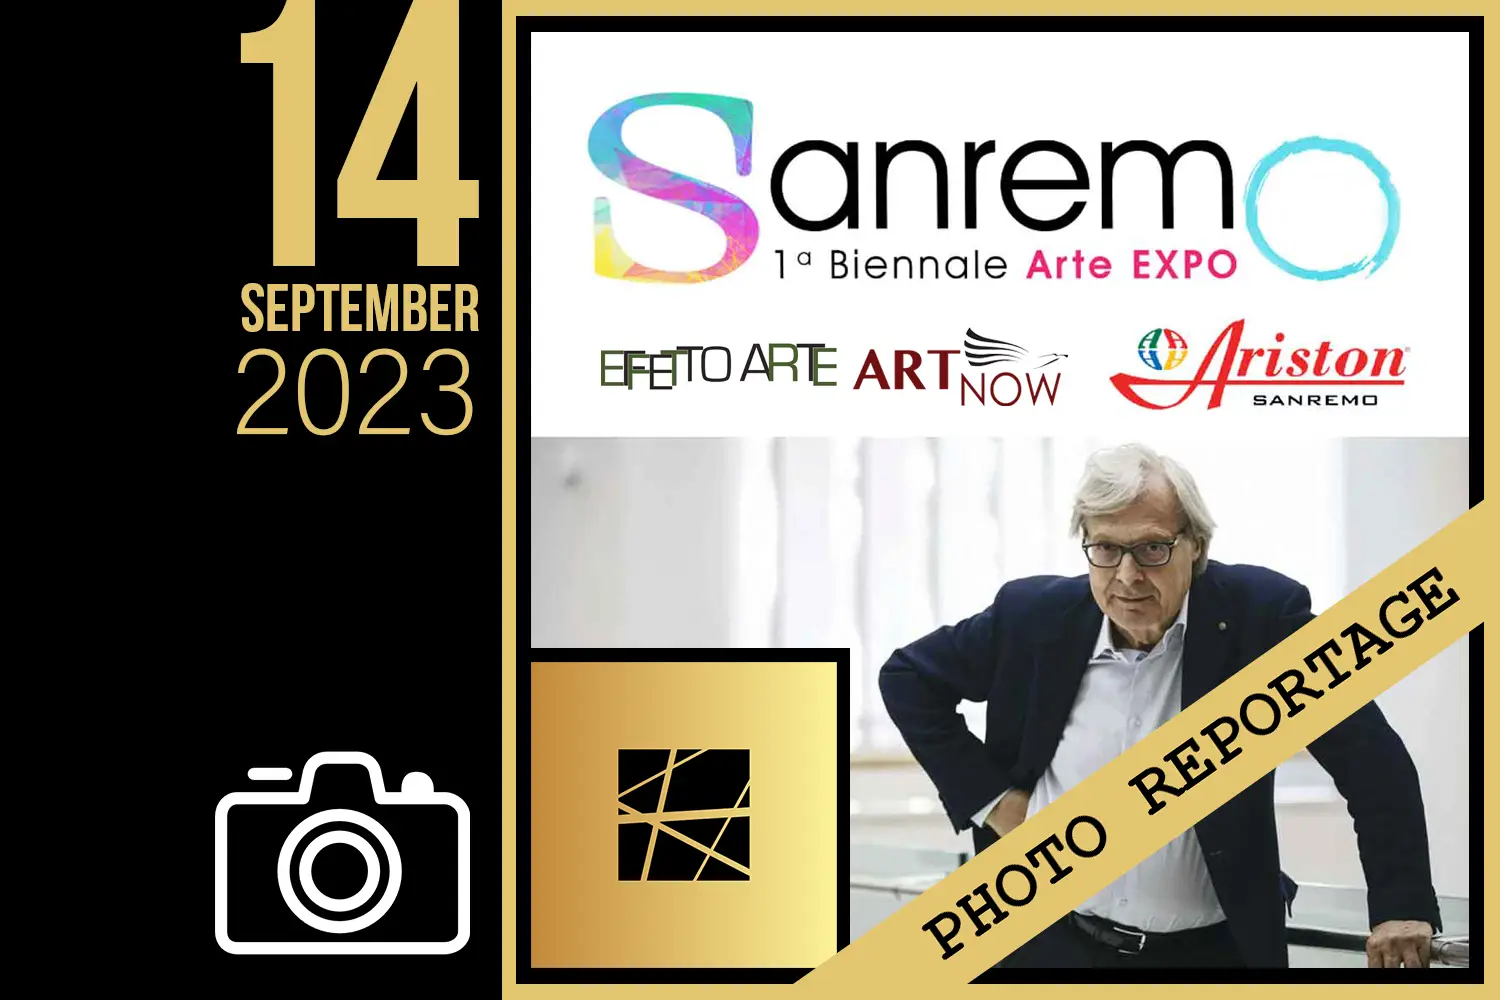 Sanremo 2023 - 1^ Biennale Arte EXPO - 14 settembre 2023